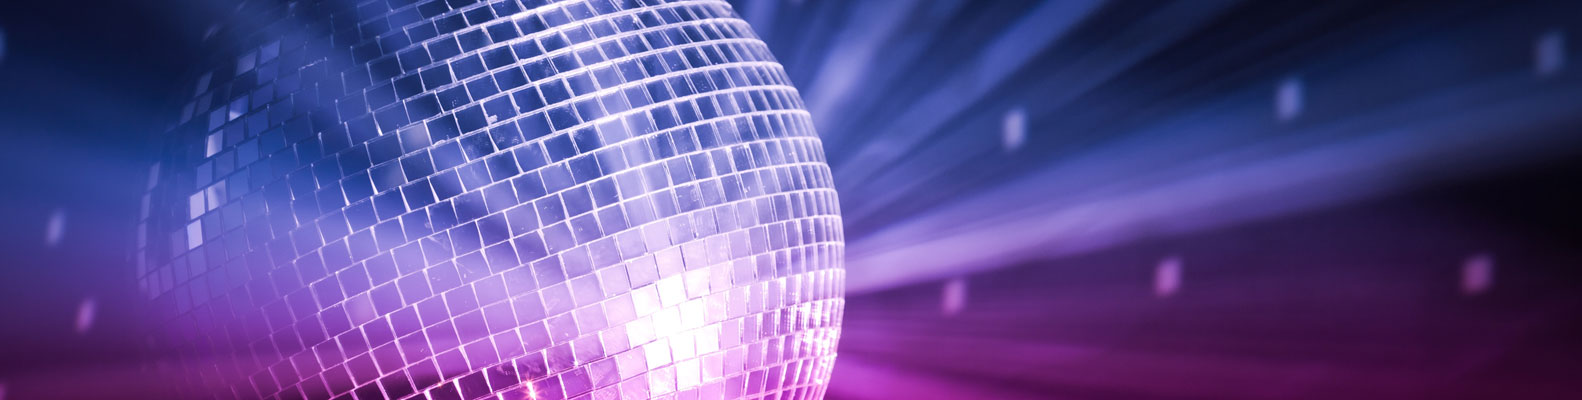 Disco Ball and lights